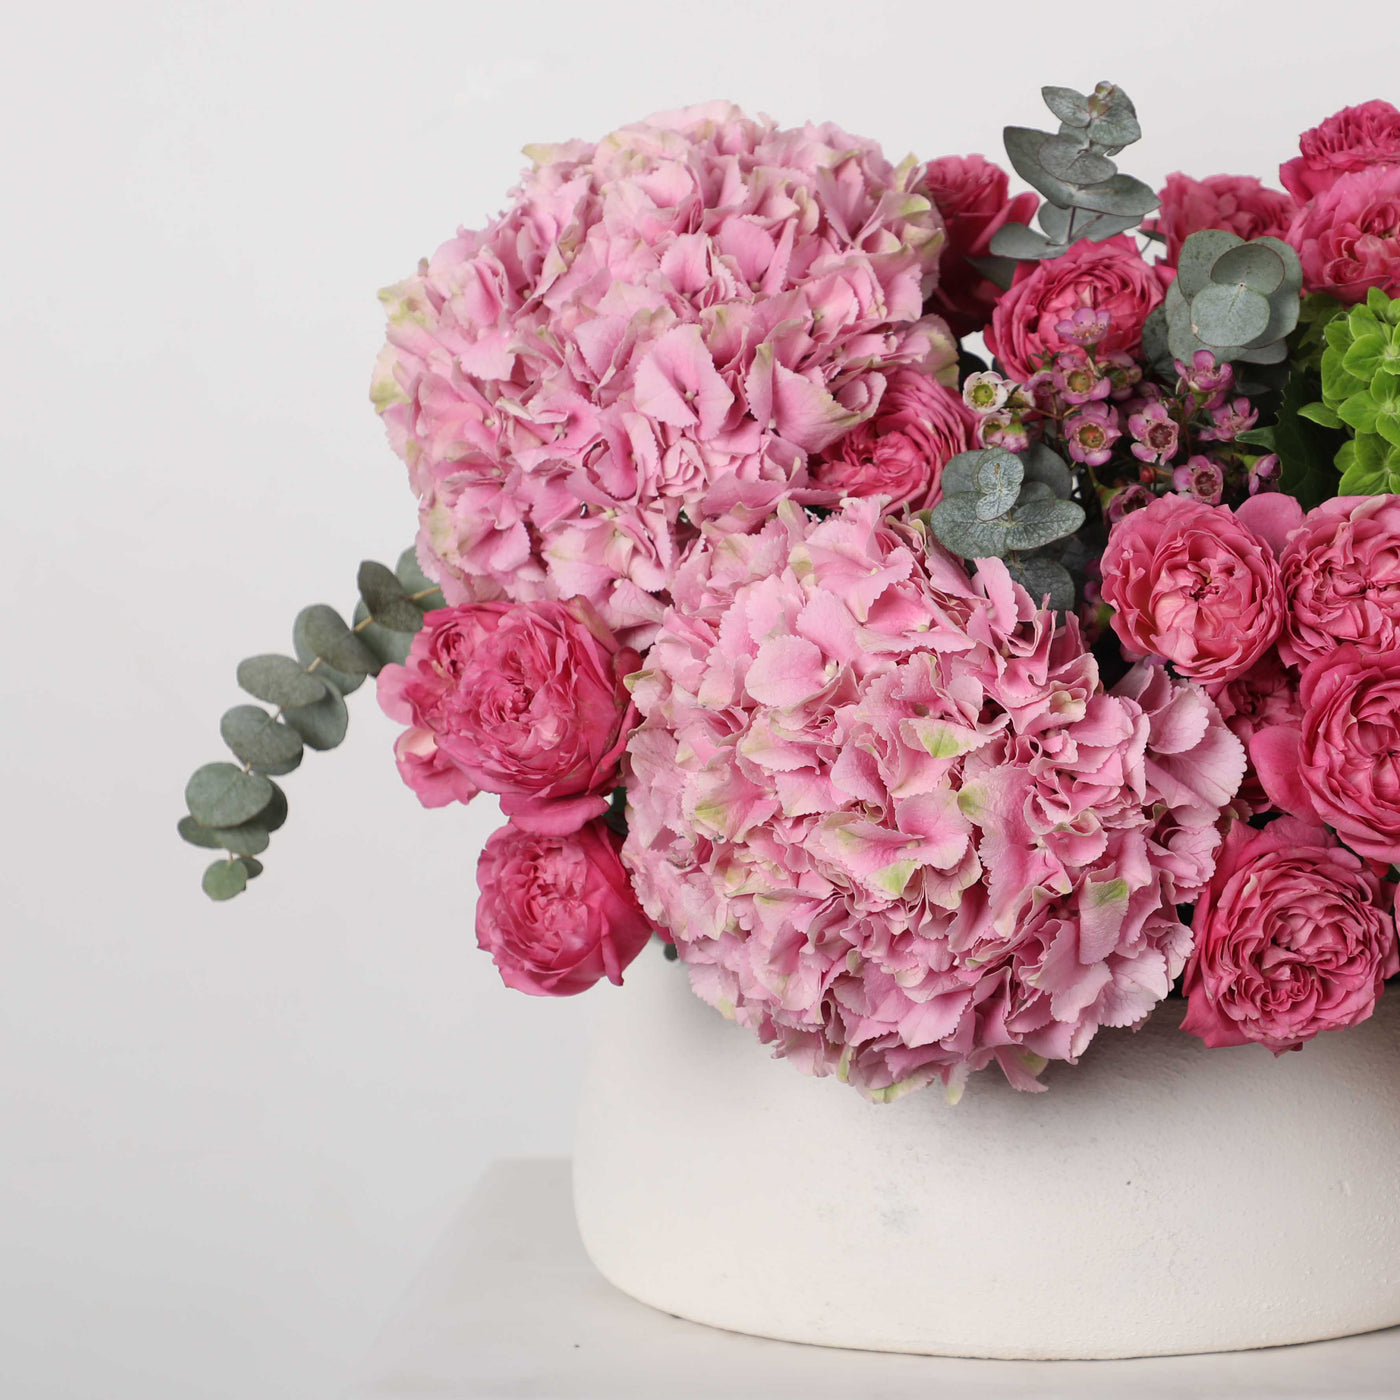 Grandeur Louise Ceramic in Vase - Fresh Flowers